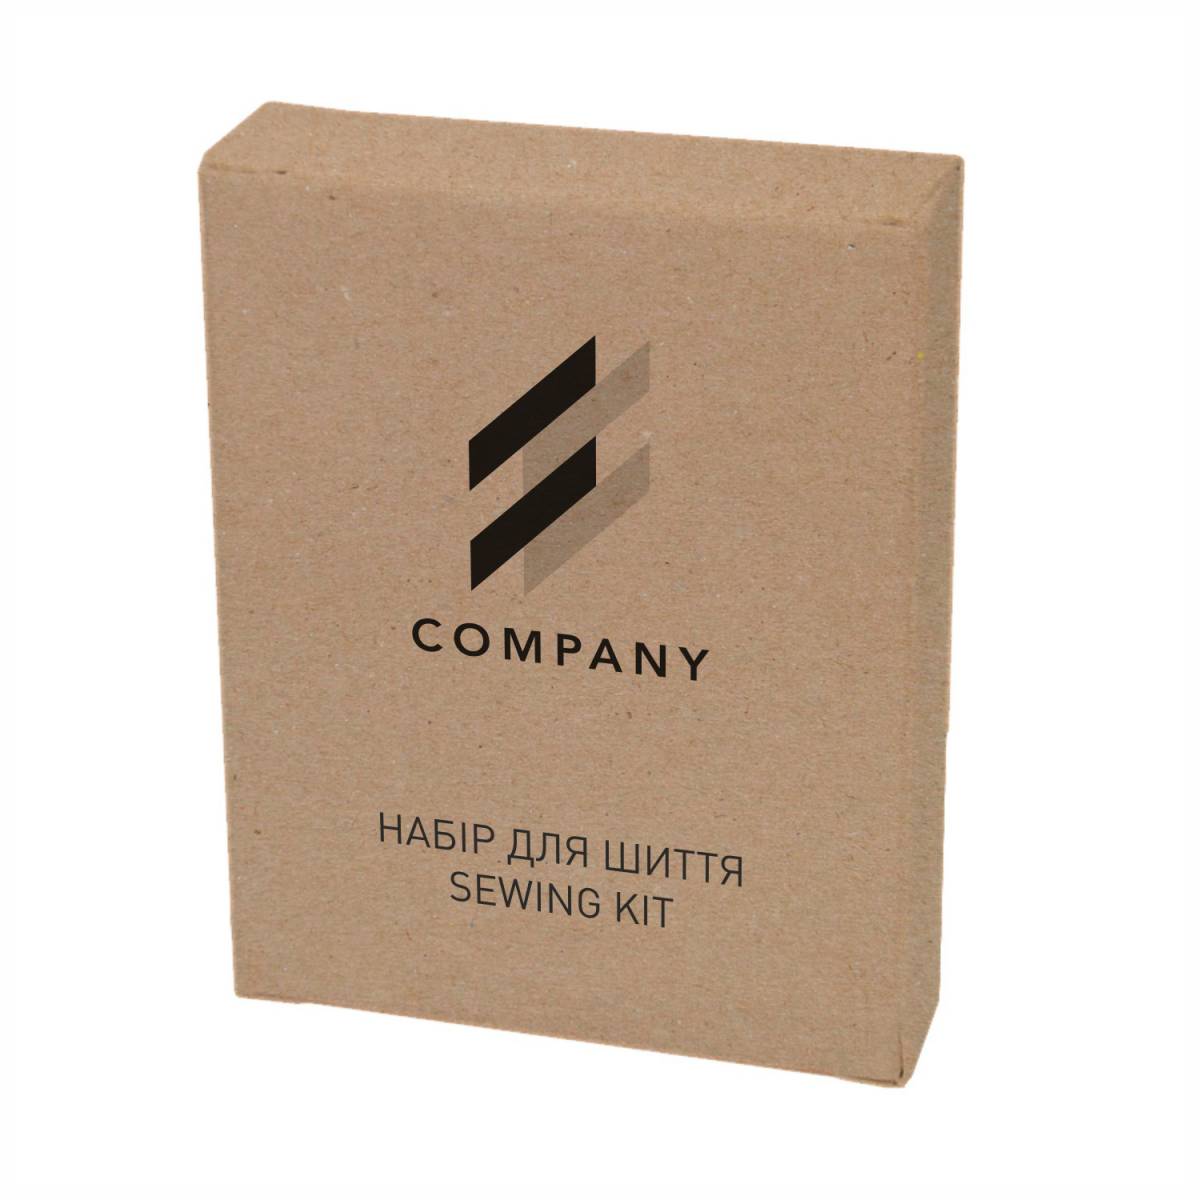 Набір для шиття з логотипом замовника, коробочка з крафт картону Cr2-SK6 HSG